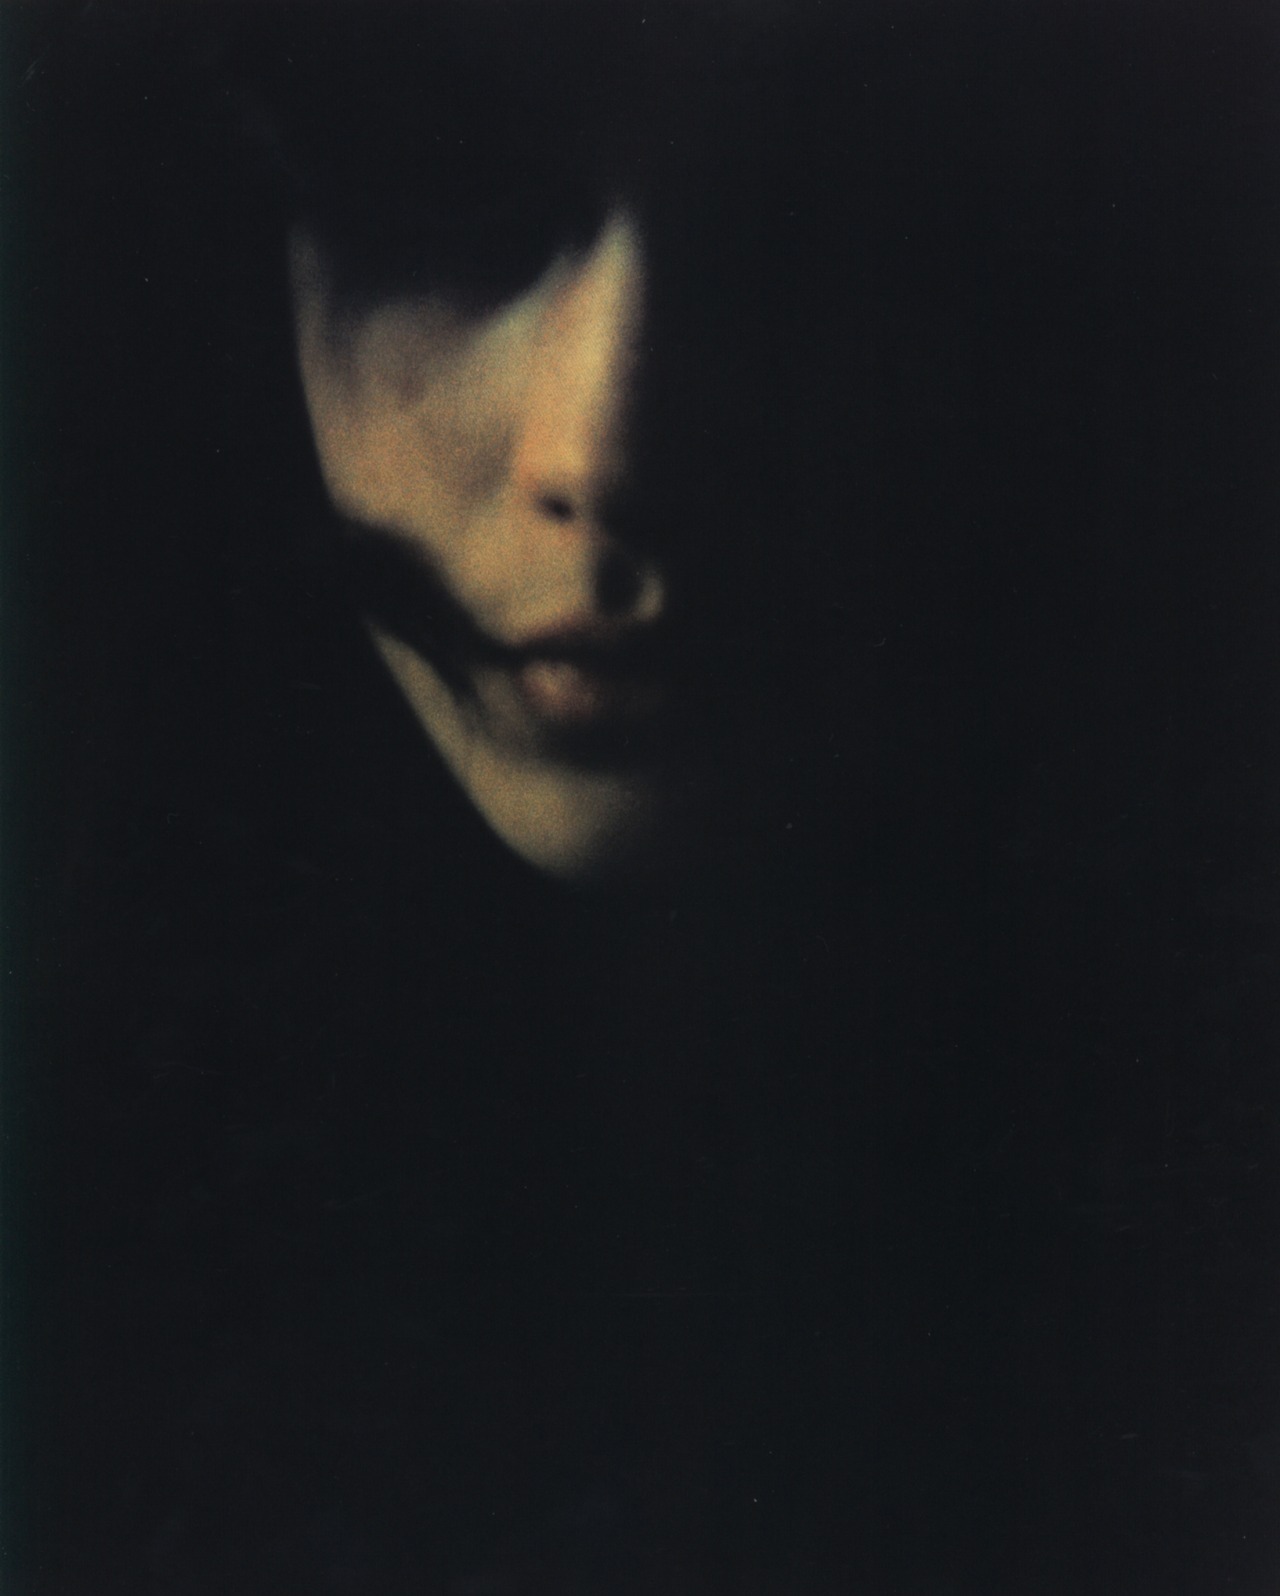 Bill Henson : Untitled, 1976